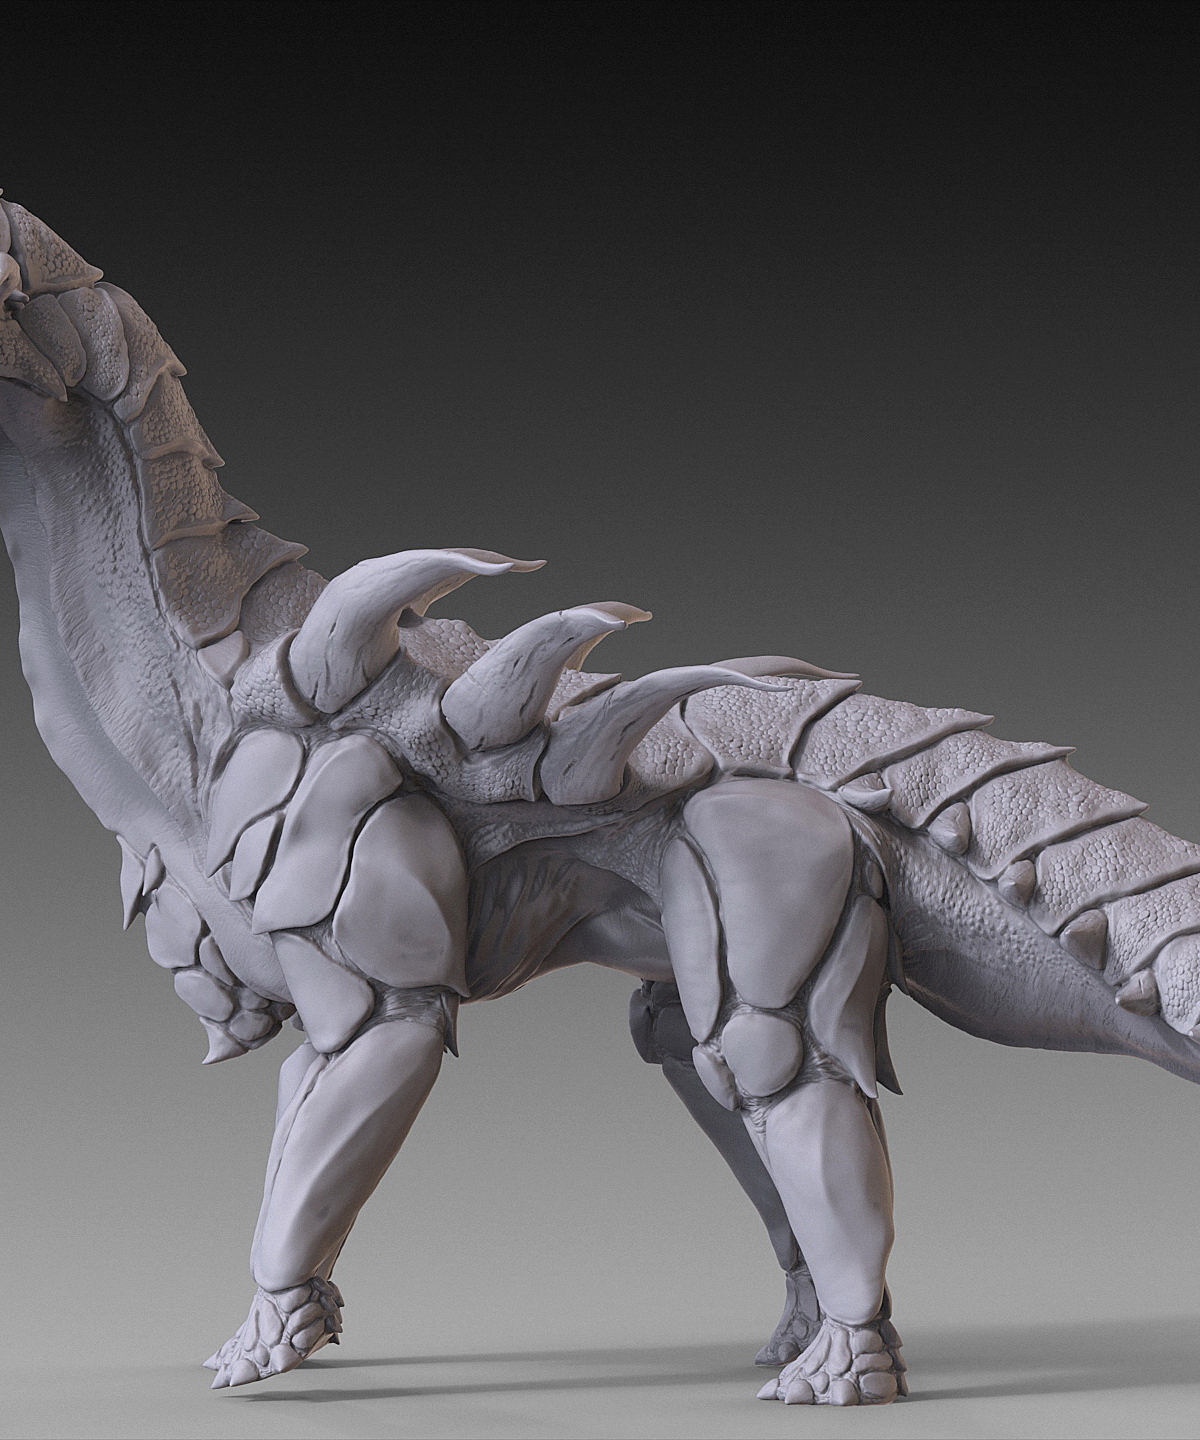 2015_08_Dino_DigitalSculpting_04.jpg